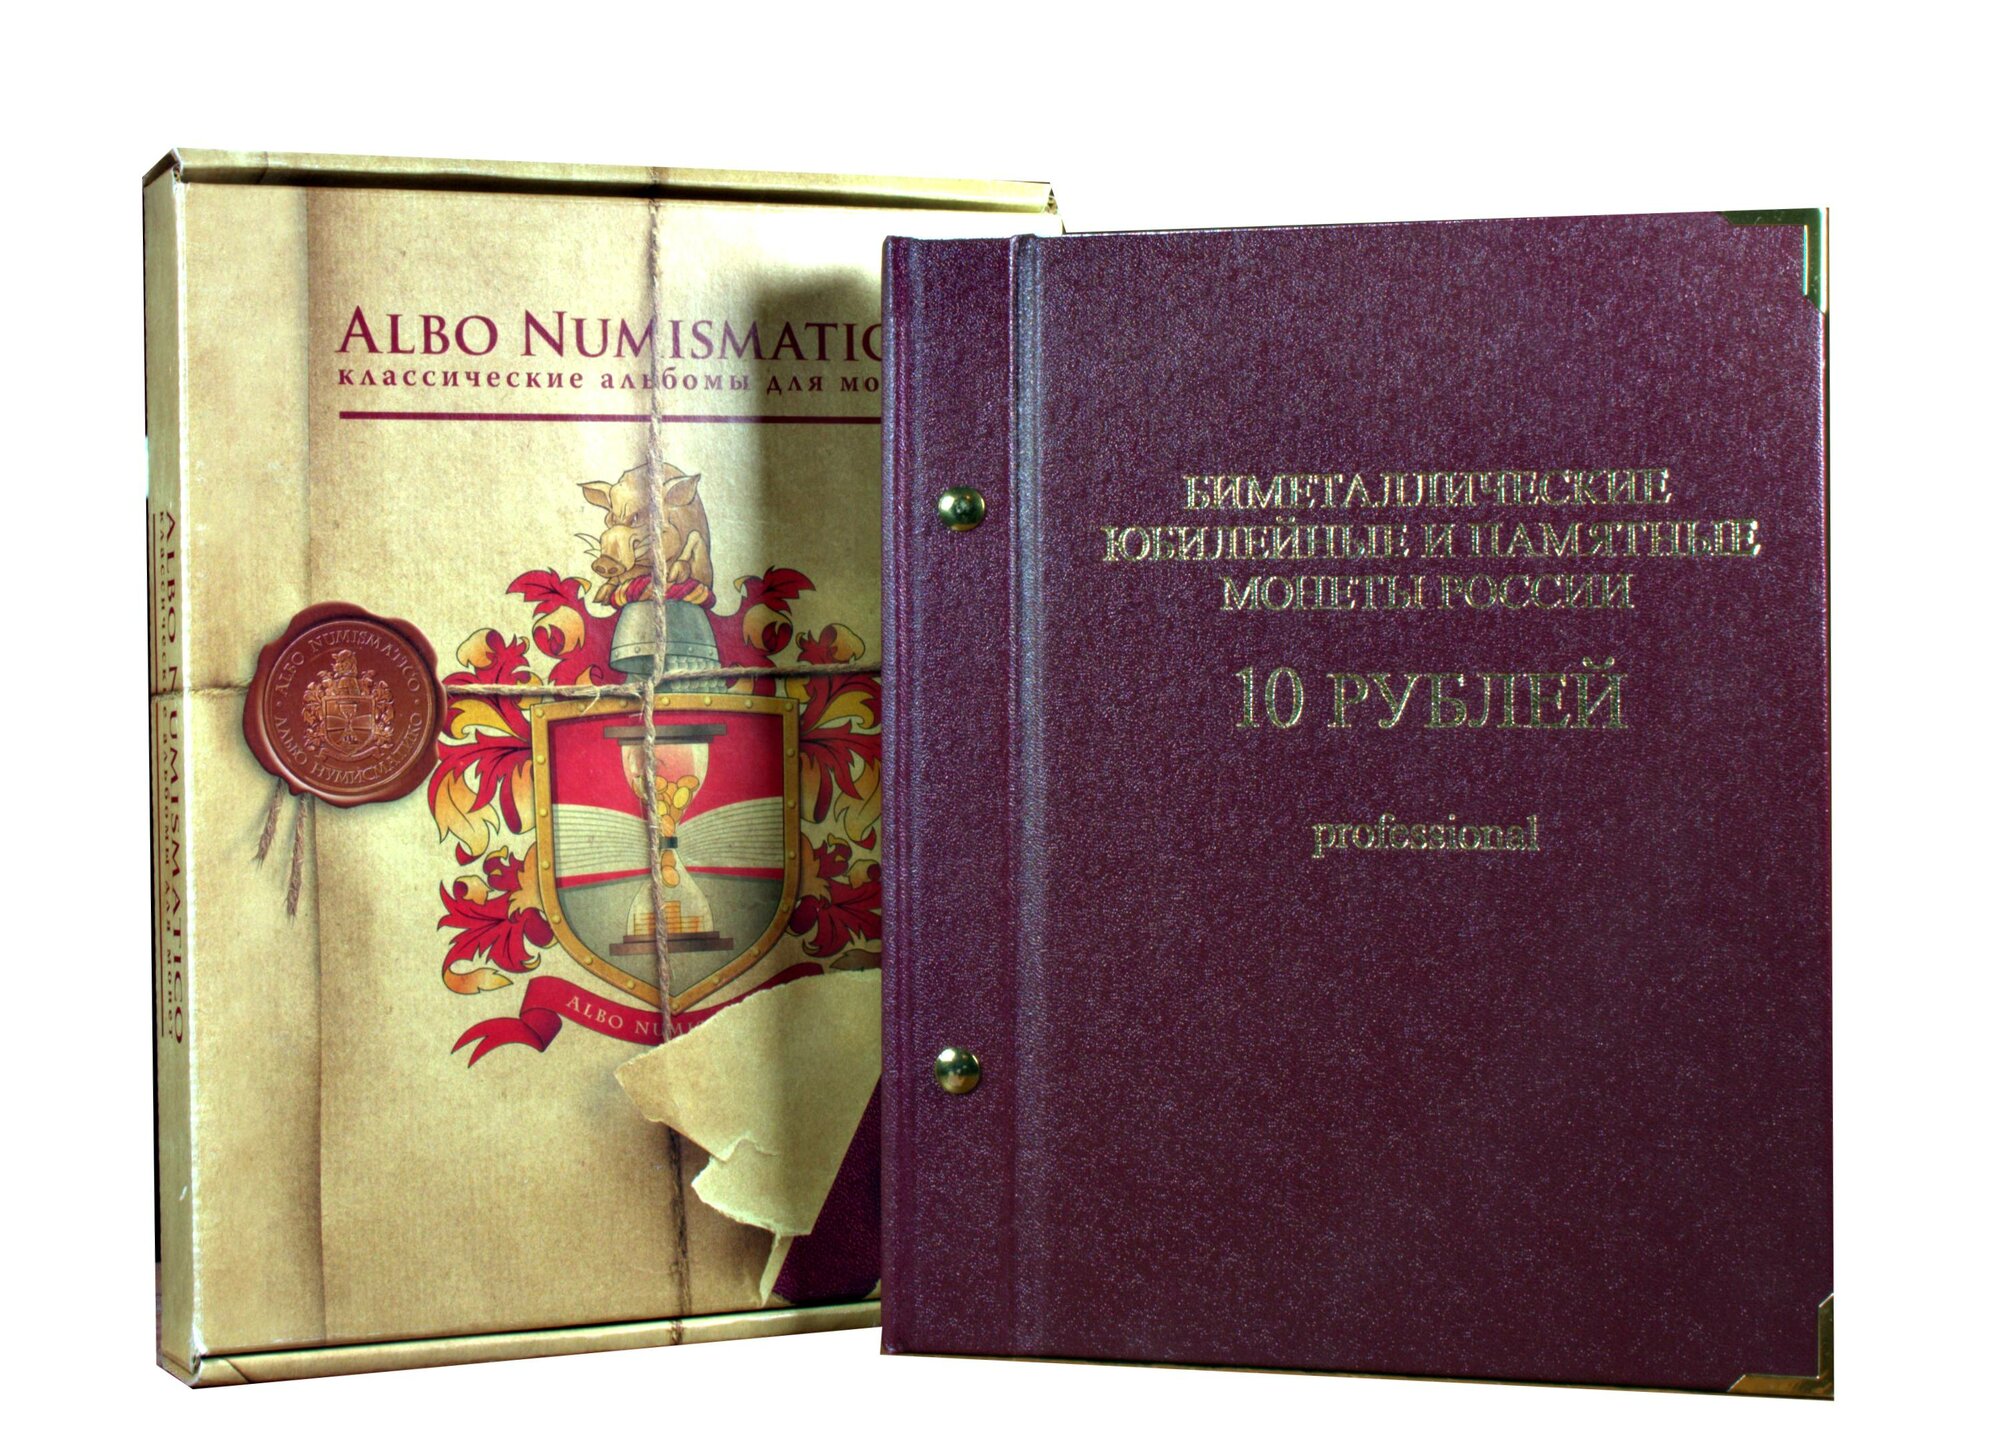 Набор из 89 монет 10 рублей билетал (кроме ЧЯП) 2000-2010 в альбоме NUMISMATICO